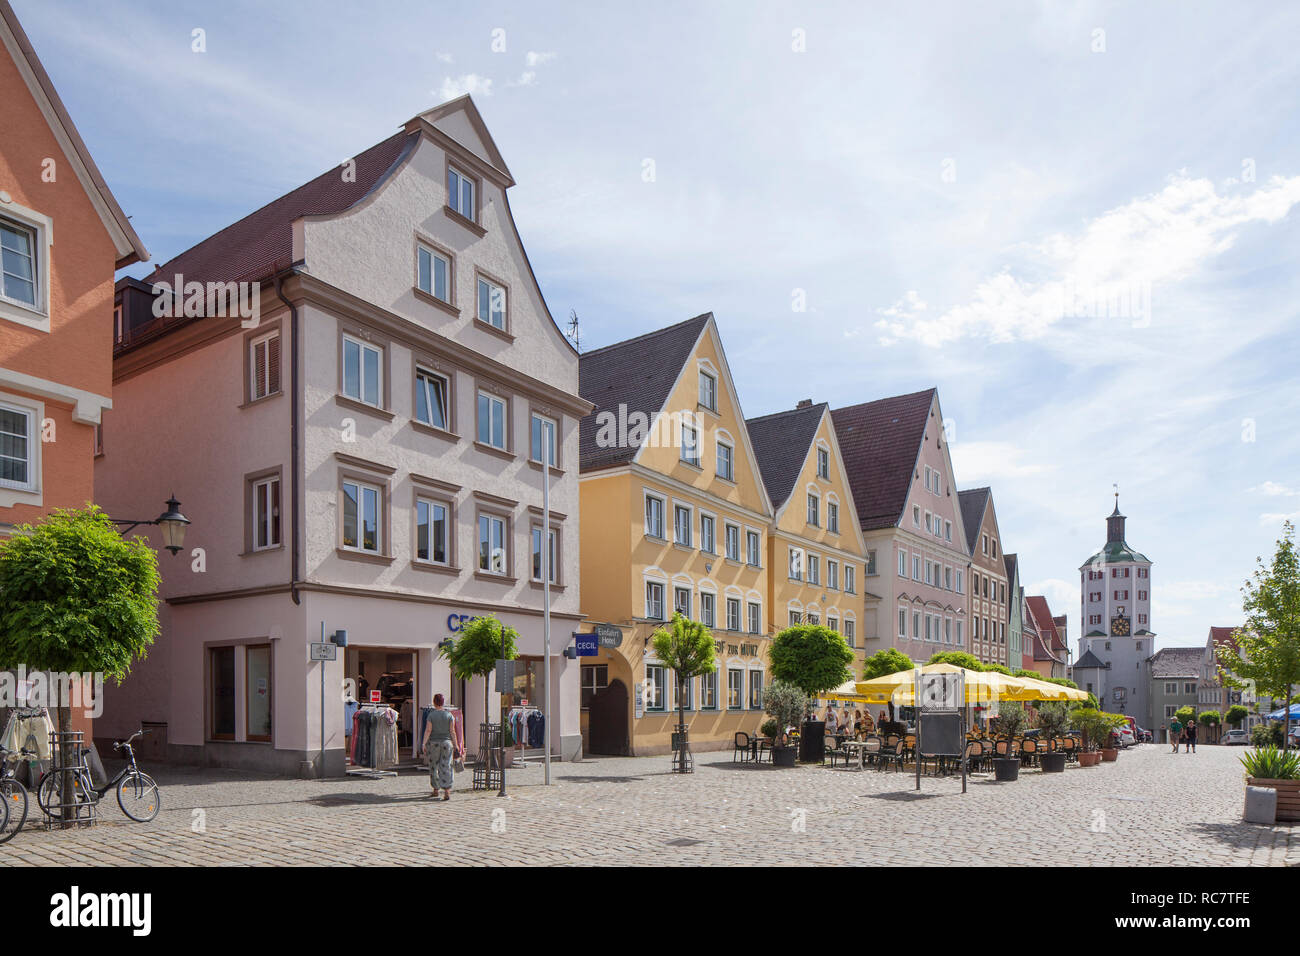 Historic facades on the market square in the old town, Günzburg, Swabia, Bavaria, Germany, Europe I Historische Hausfassaden am Marktplatz in der Alts Stock Photo